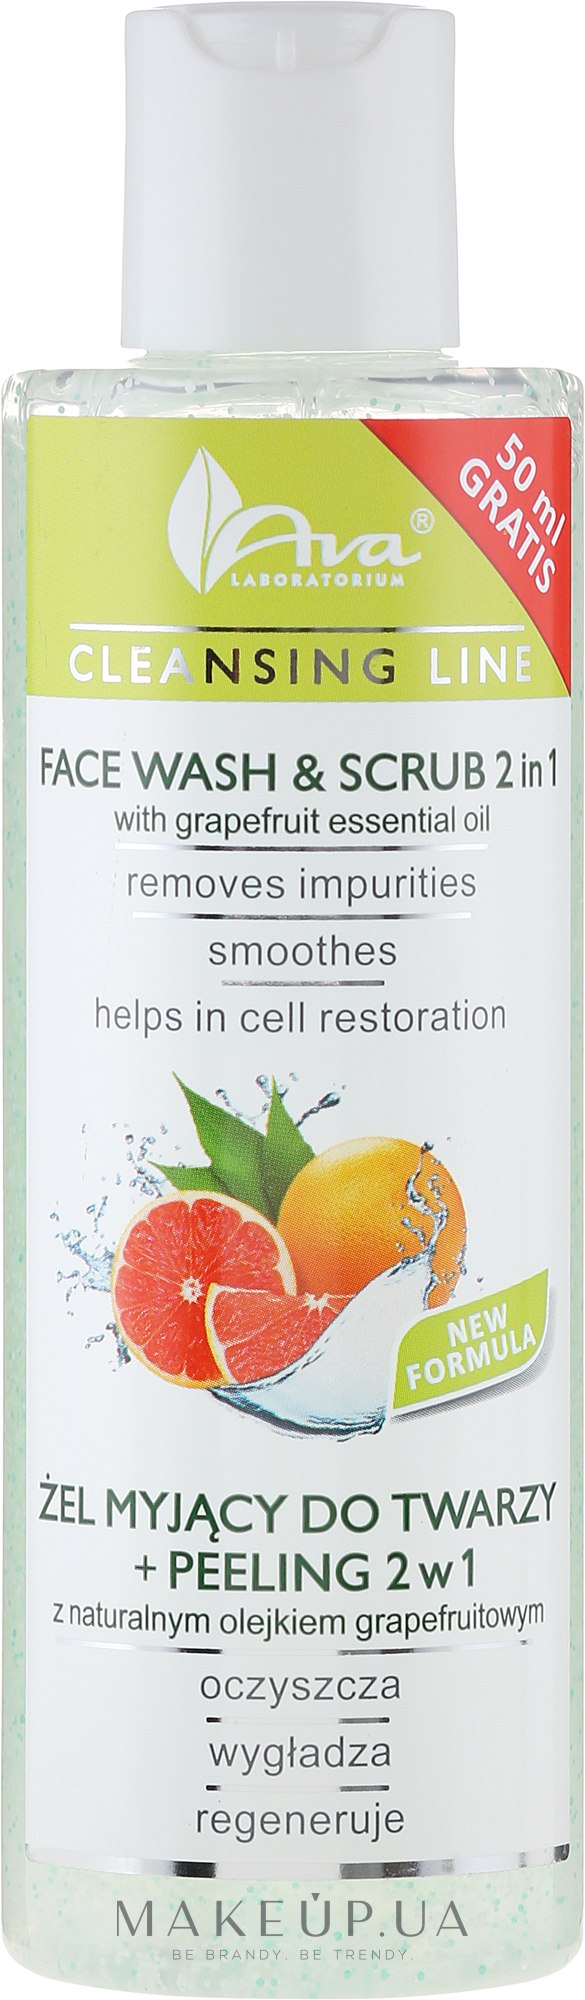 Очищающий гель + скраб 2 в 1 с грейпфрутовым маслом - Ava Laboratorium Cleansing Line Face Wash & Scrub 2 in 1 — фото 200ml